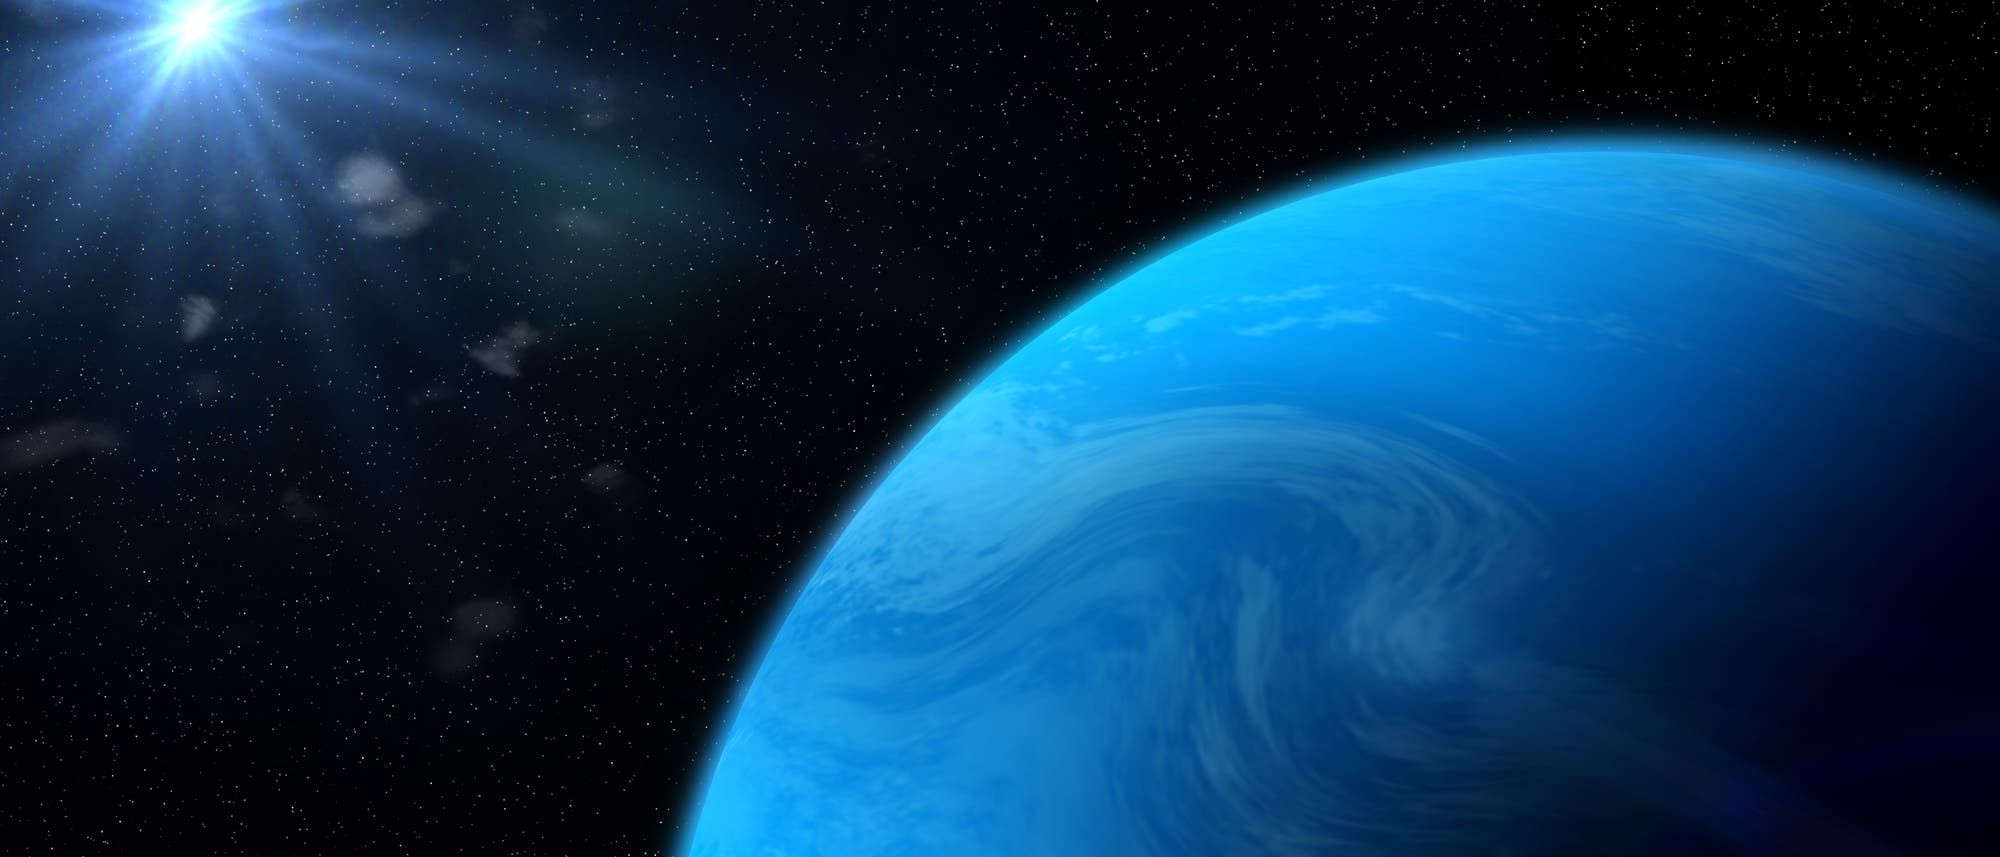 Ein blauer Exoplanet wird von einer fernen Sonne angestrahlt.